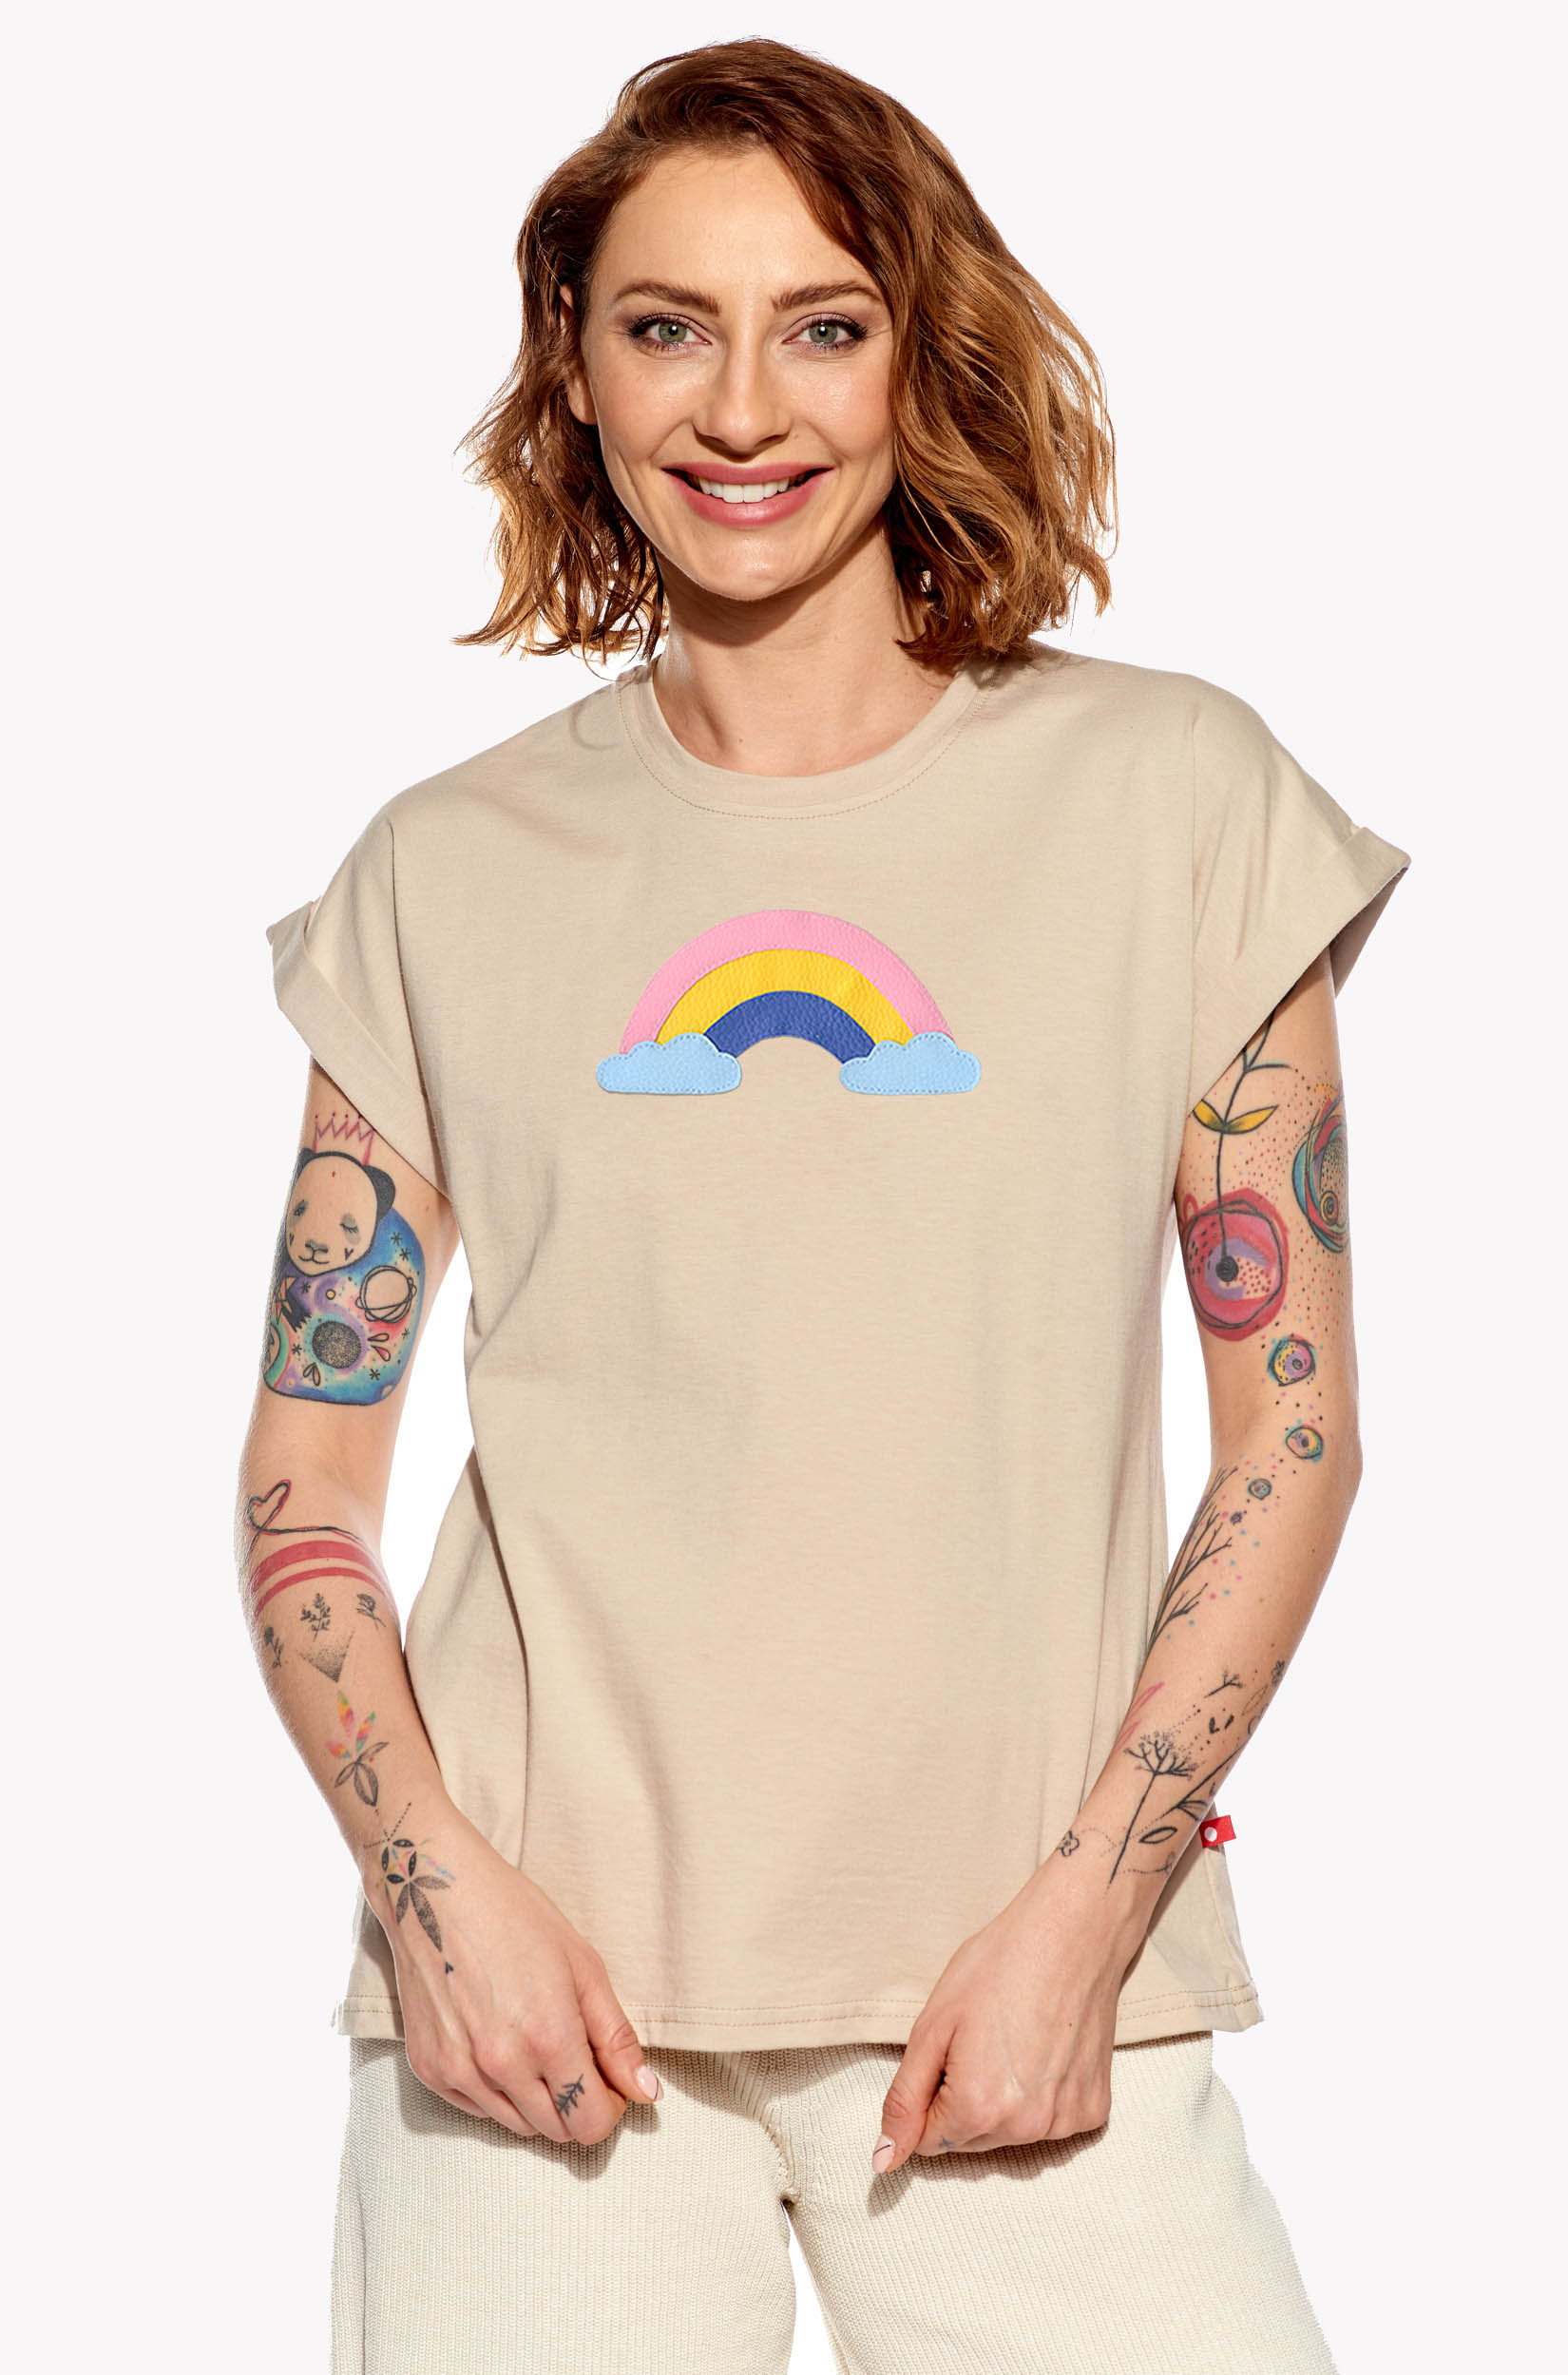 Shirt with a rainbow